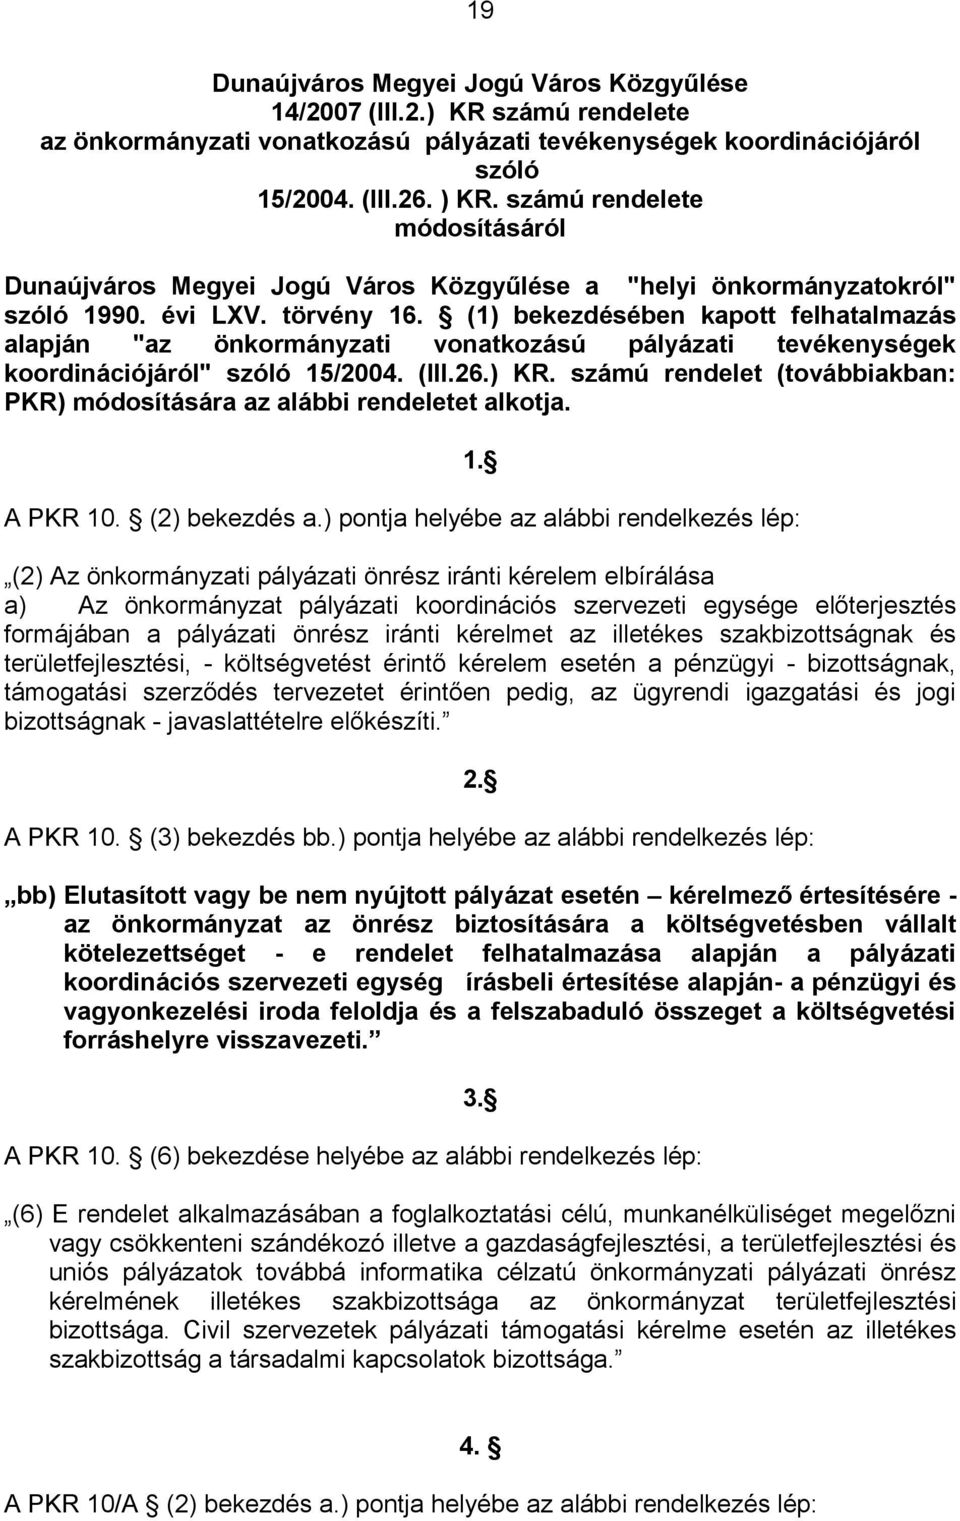 (1) bekezdésében kapott felhatalmazás alapján "az önkormányzati vonatkozású pályázati tevékenységek koordinációjáról" szóló 15/2004. (III.26.) KR.